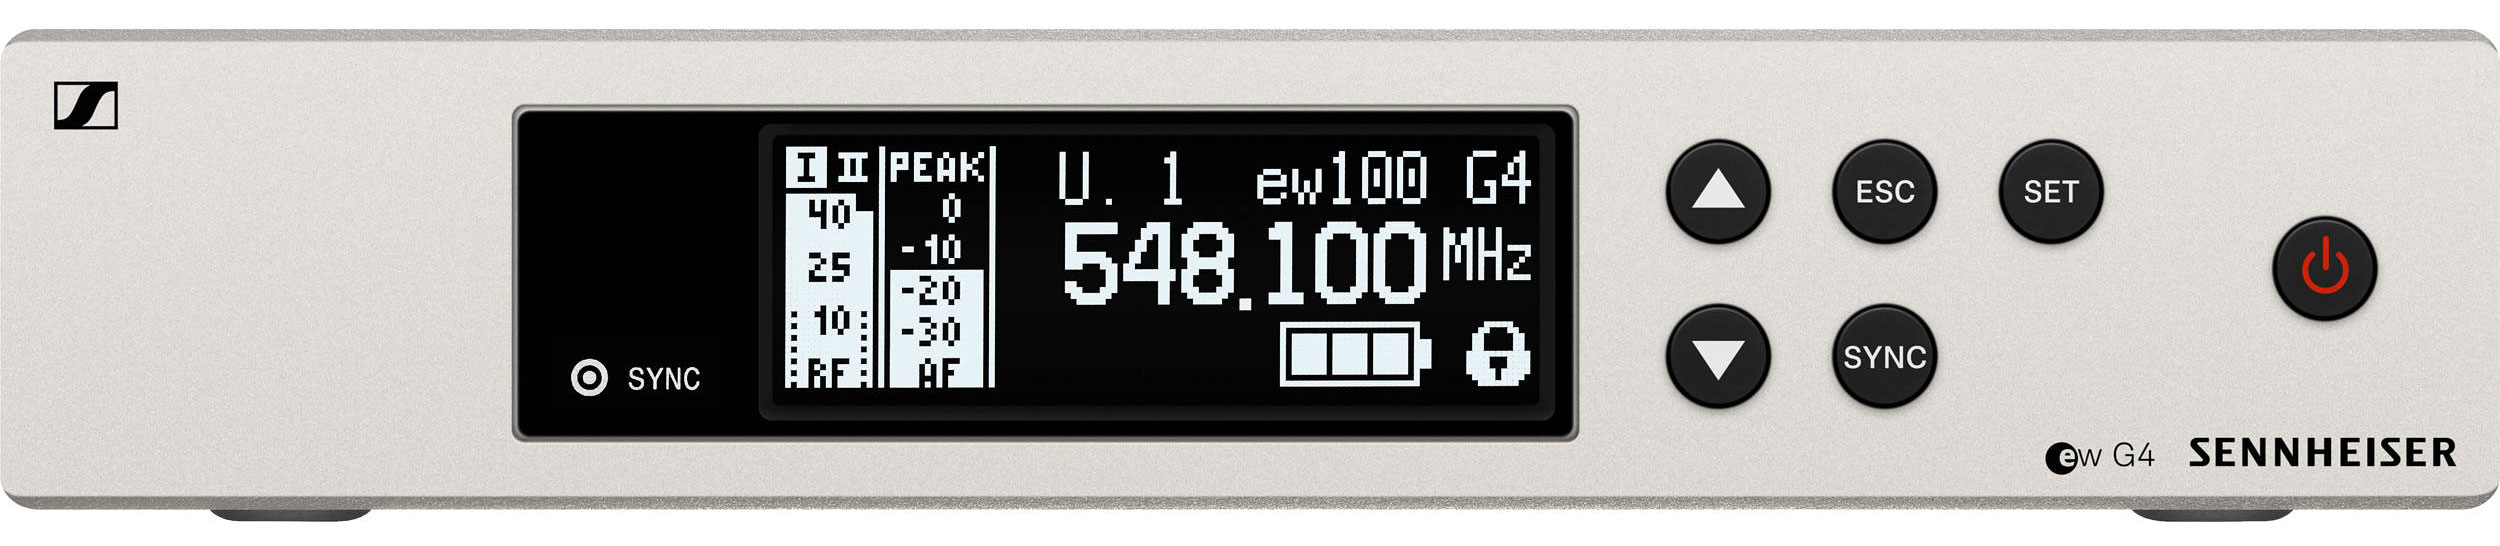 Sennheiser EW 100 G4-ME3-A1 по цене 65 690 ₽